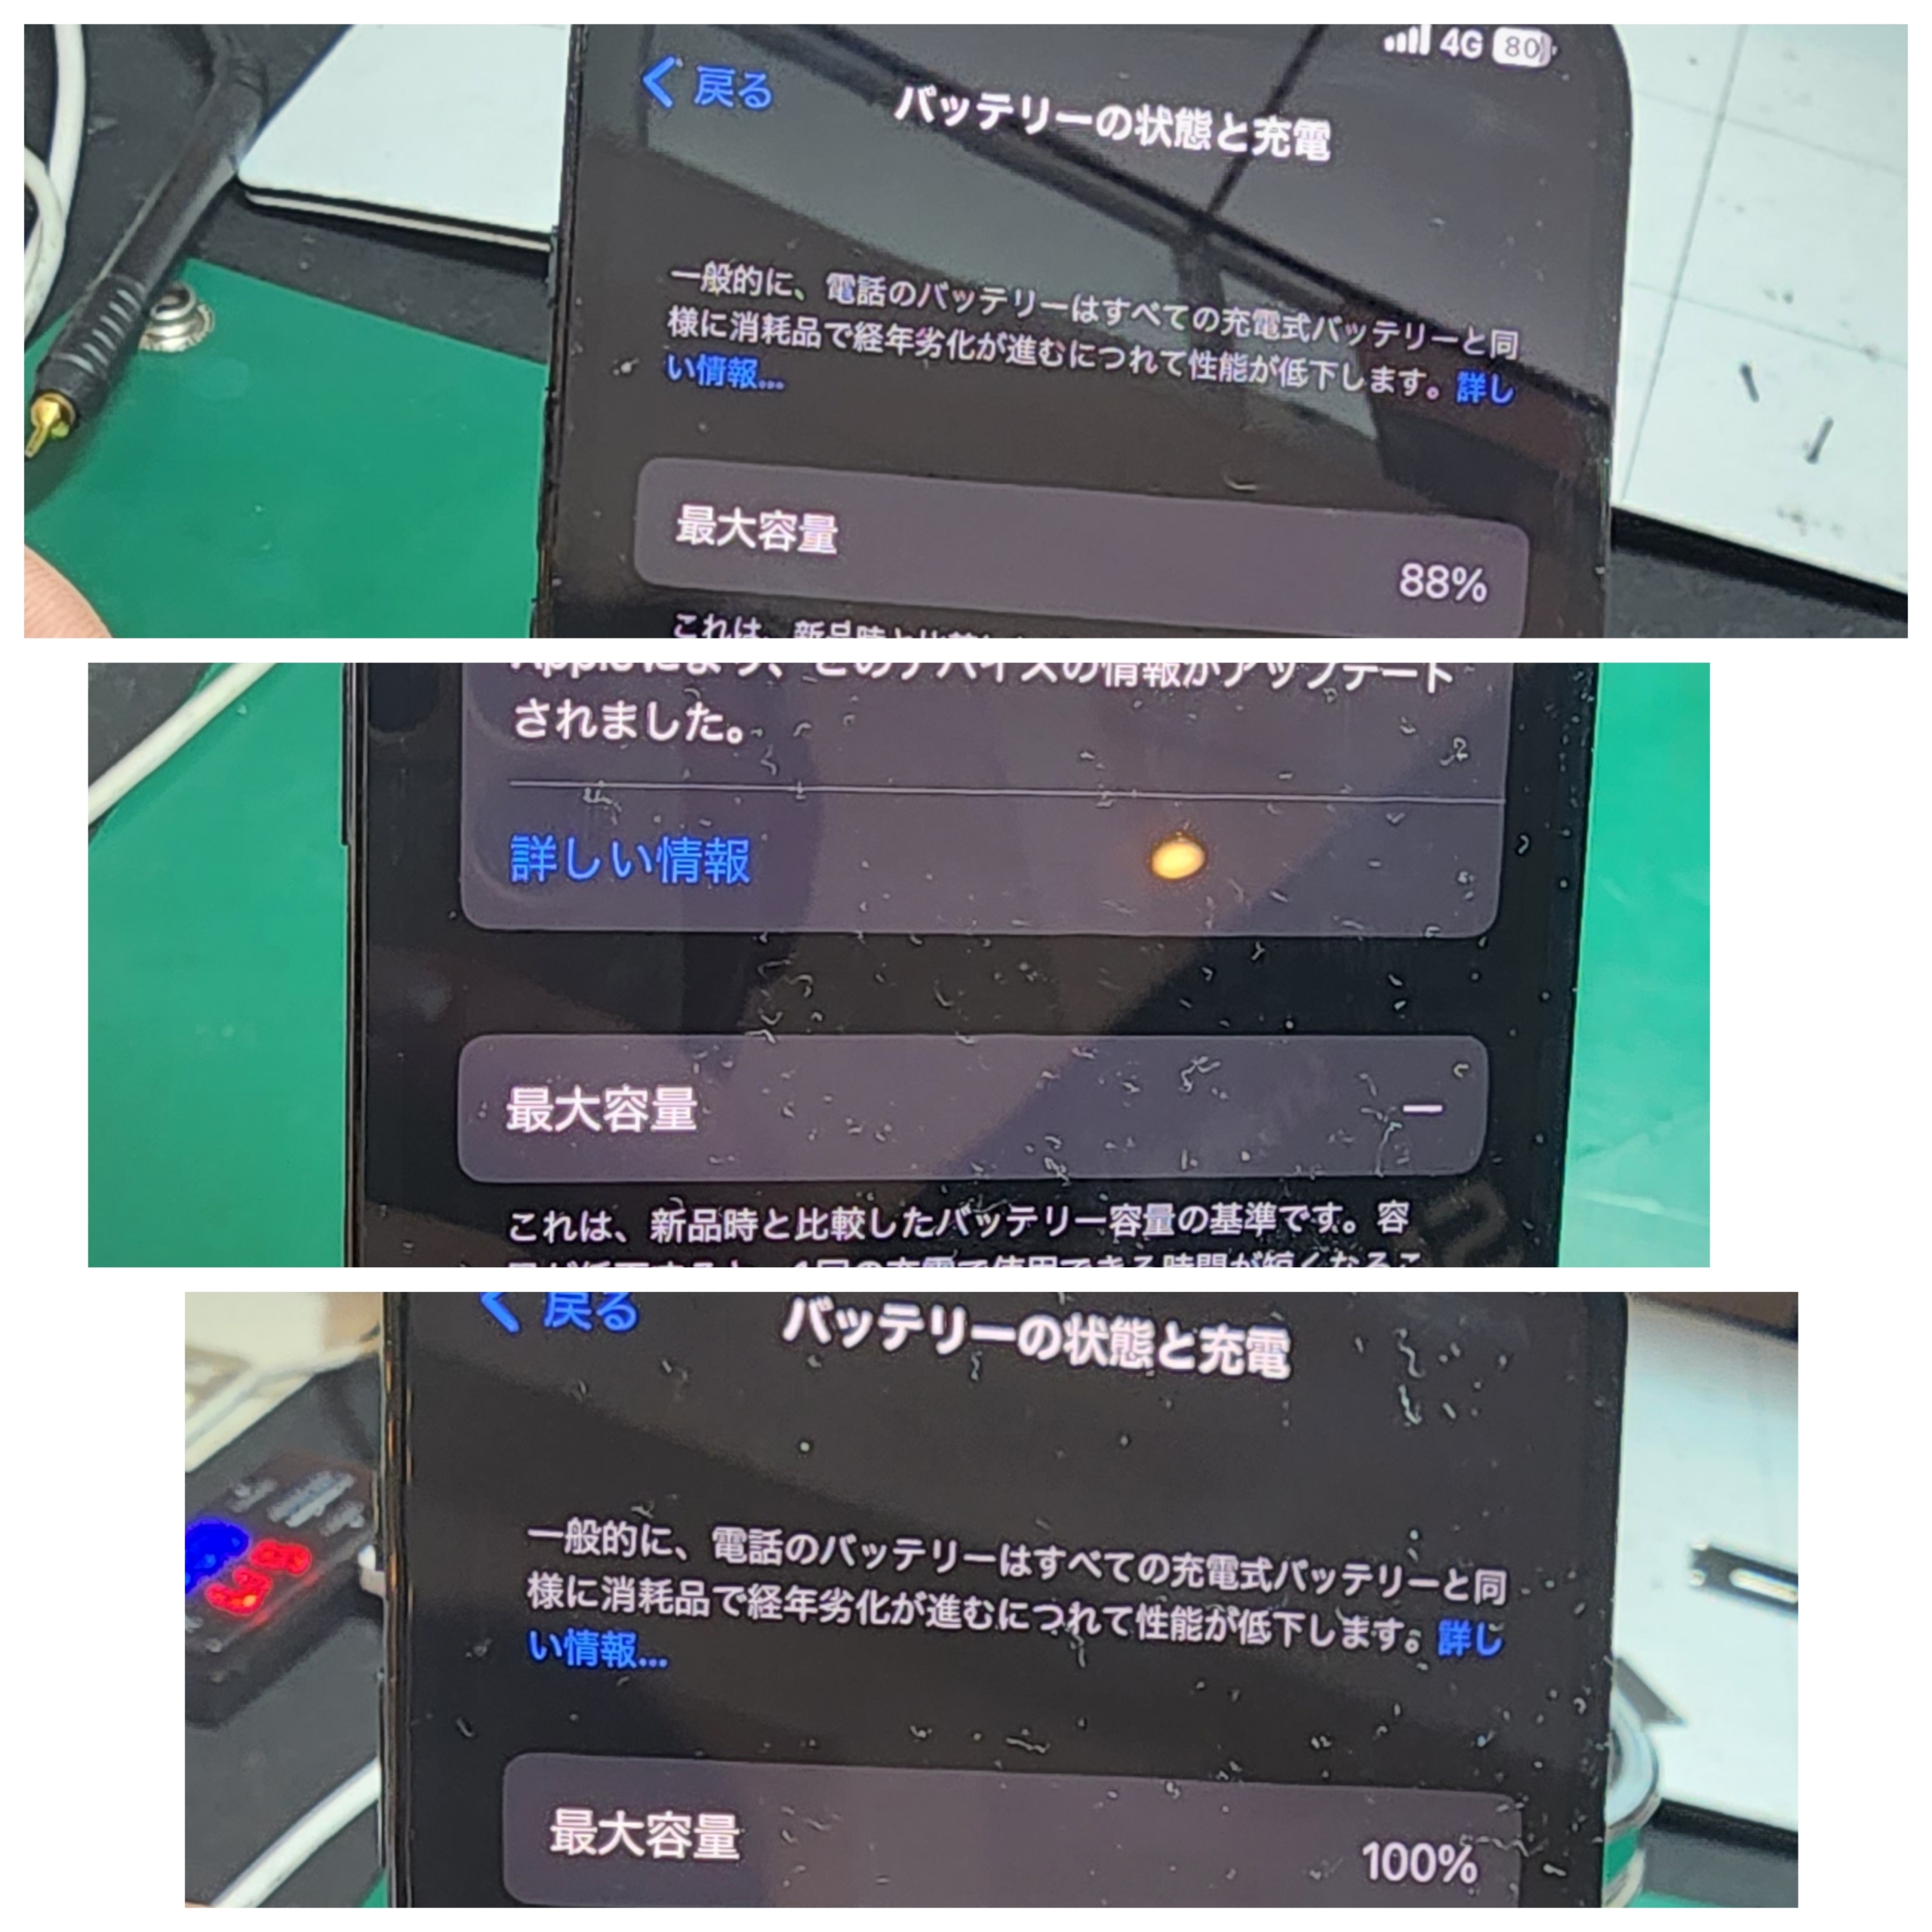 【本日の修理】iPhone 12バッテリー交換